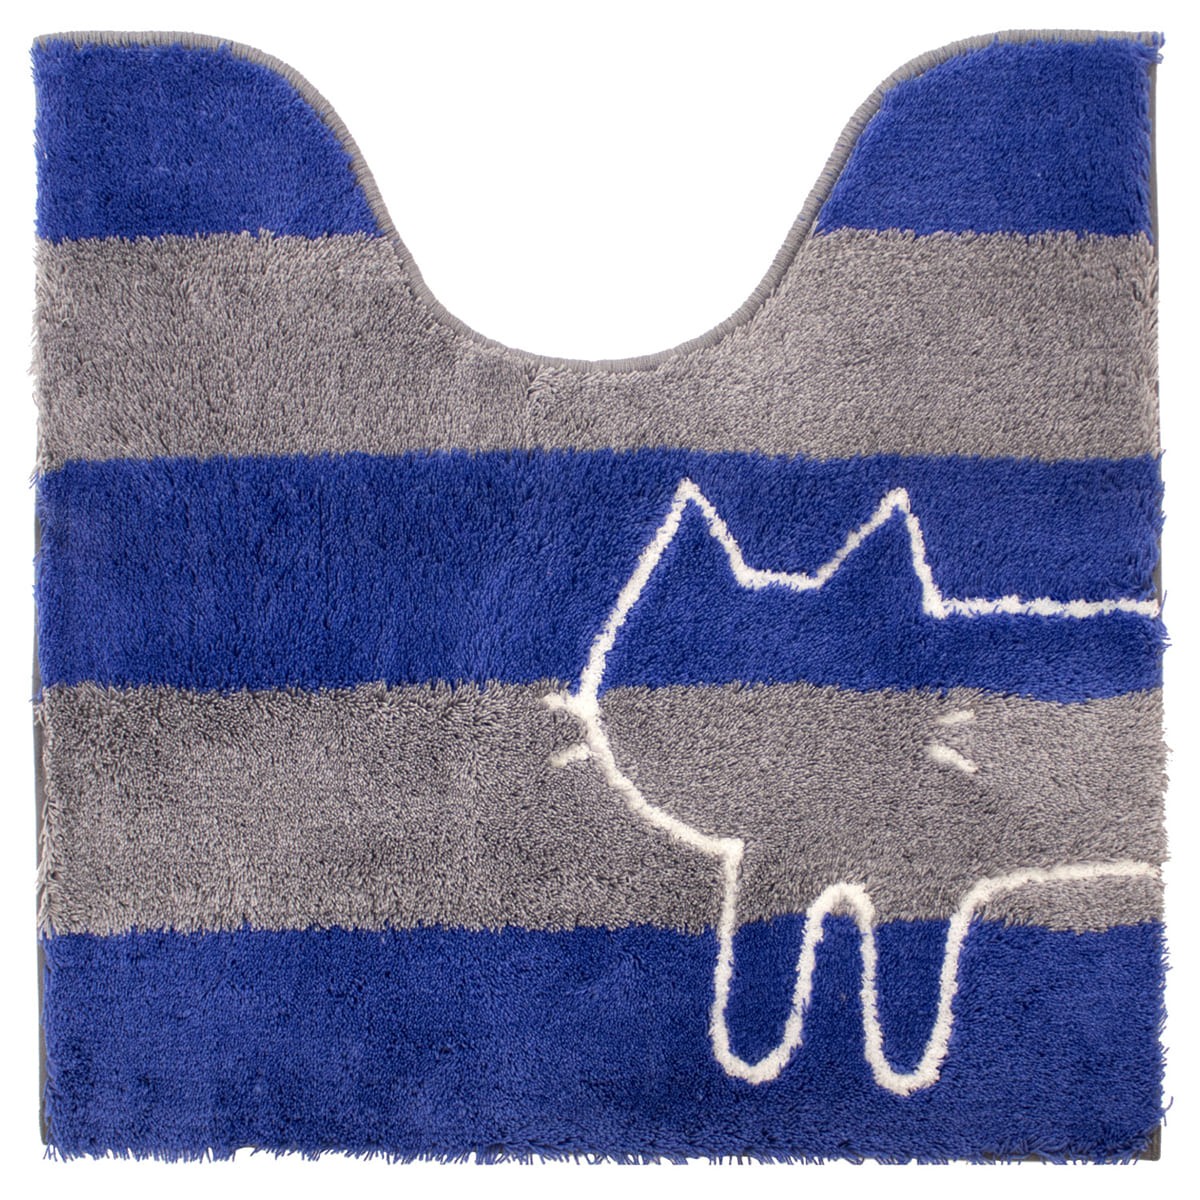 トイレマット 洗える 約60×60cm うちねこ ネコ ねこ 猫 トイレカバー マット おしゃれ ボーダー グレー ブルー ホワイト オカ